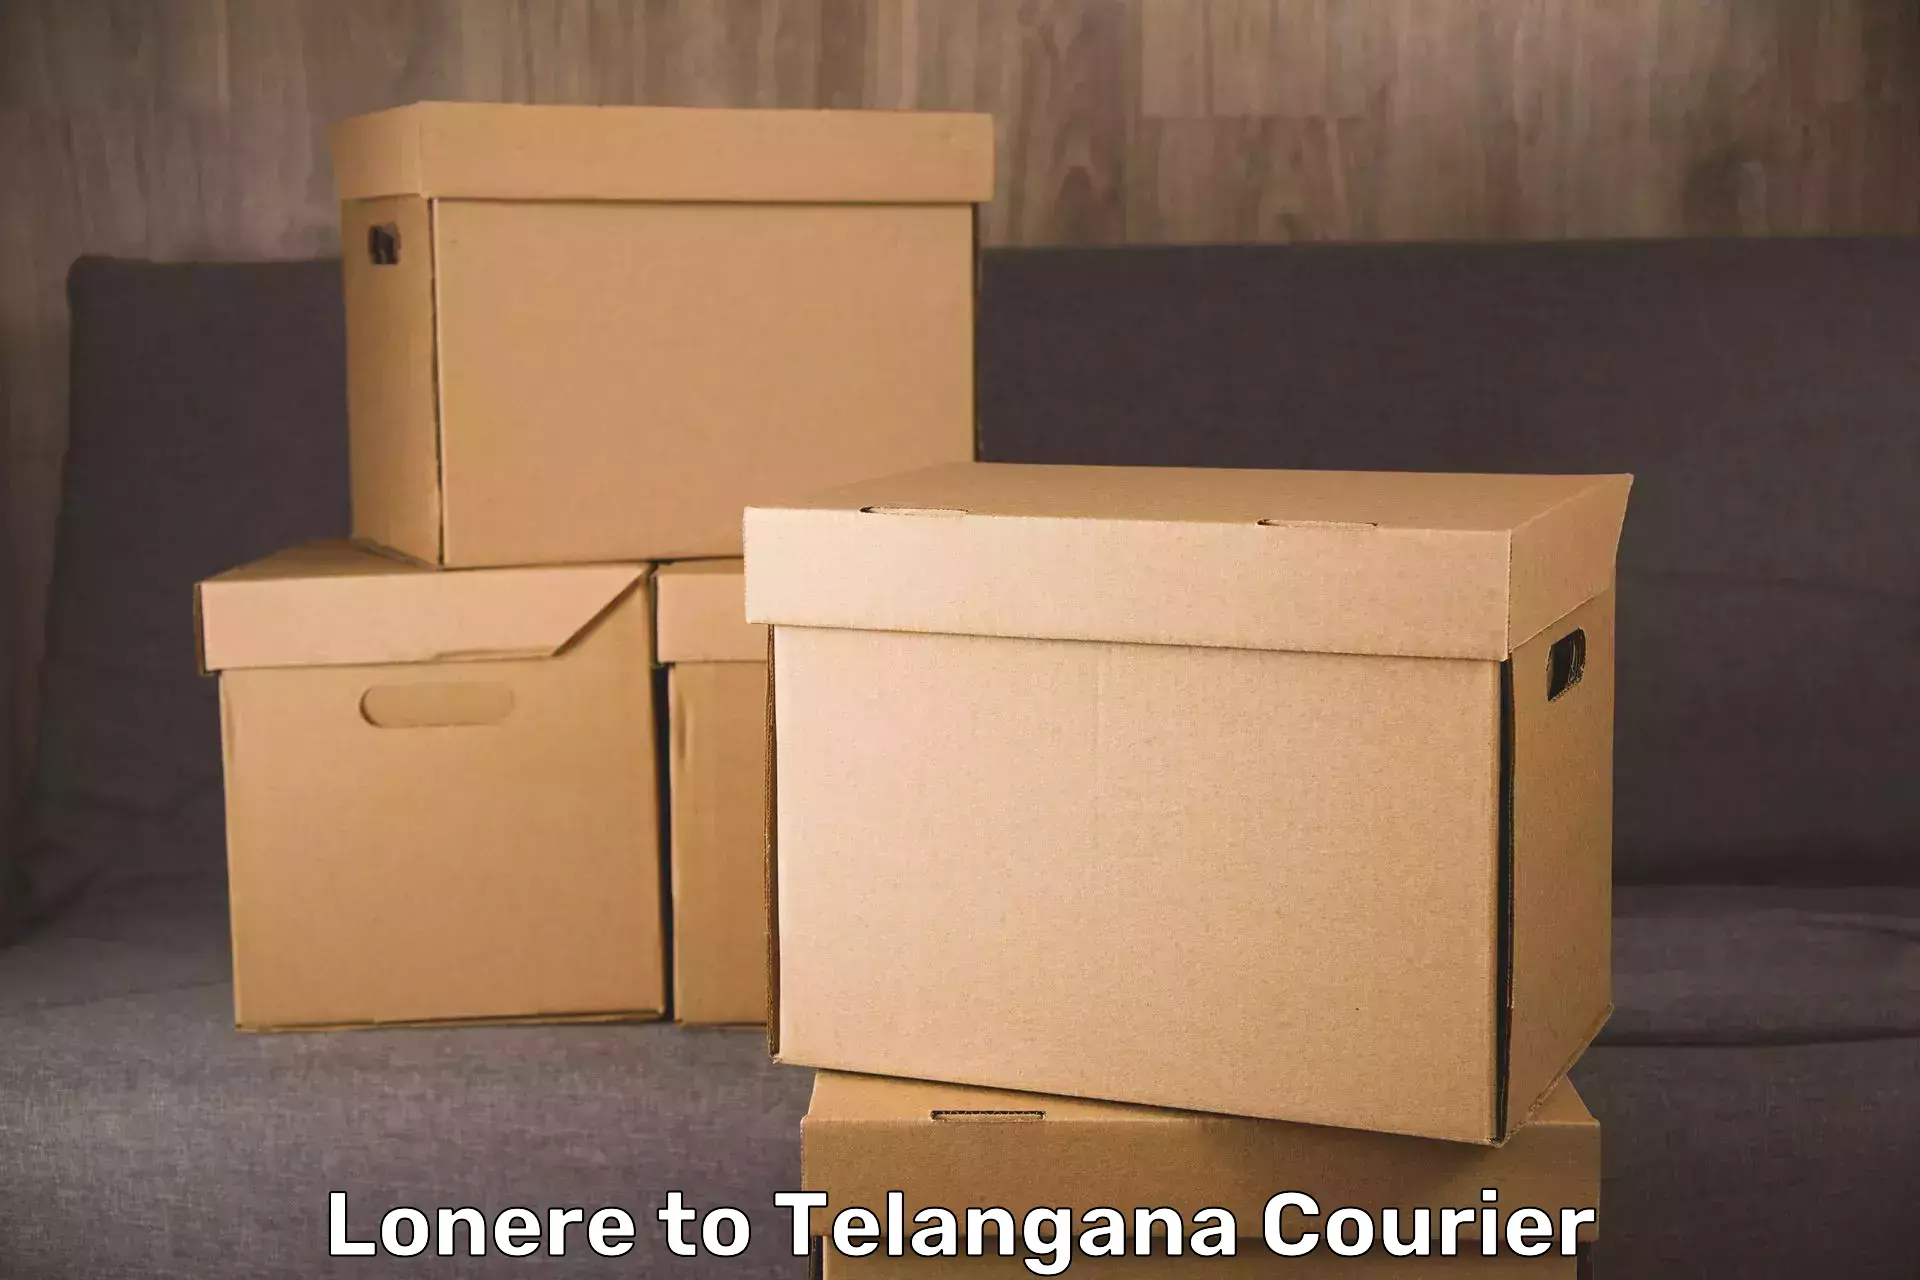 Luggage shipment tracking Lonere to Mudigonda